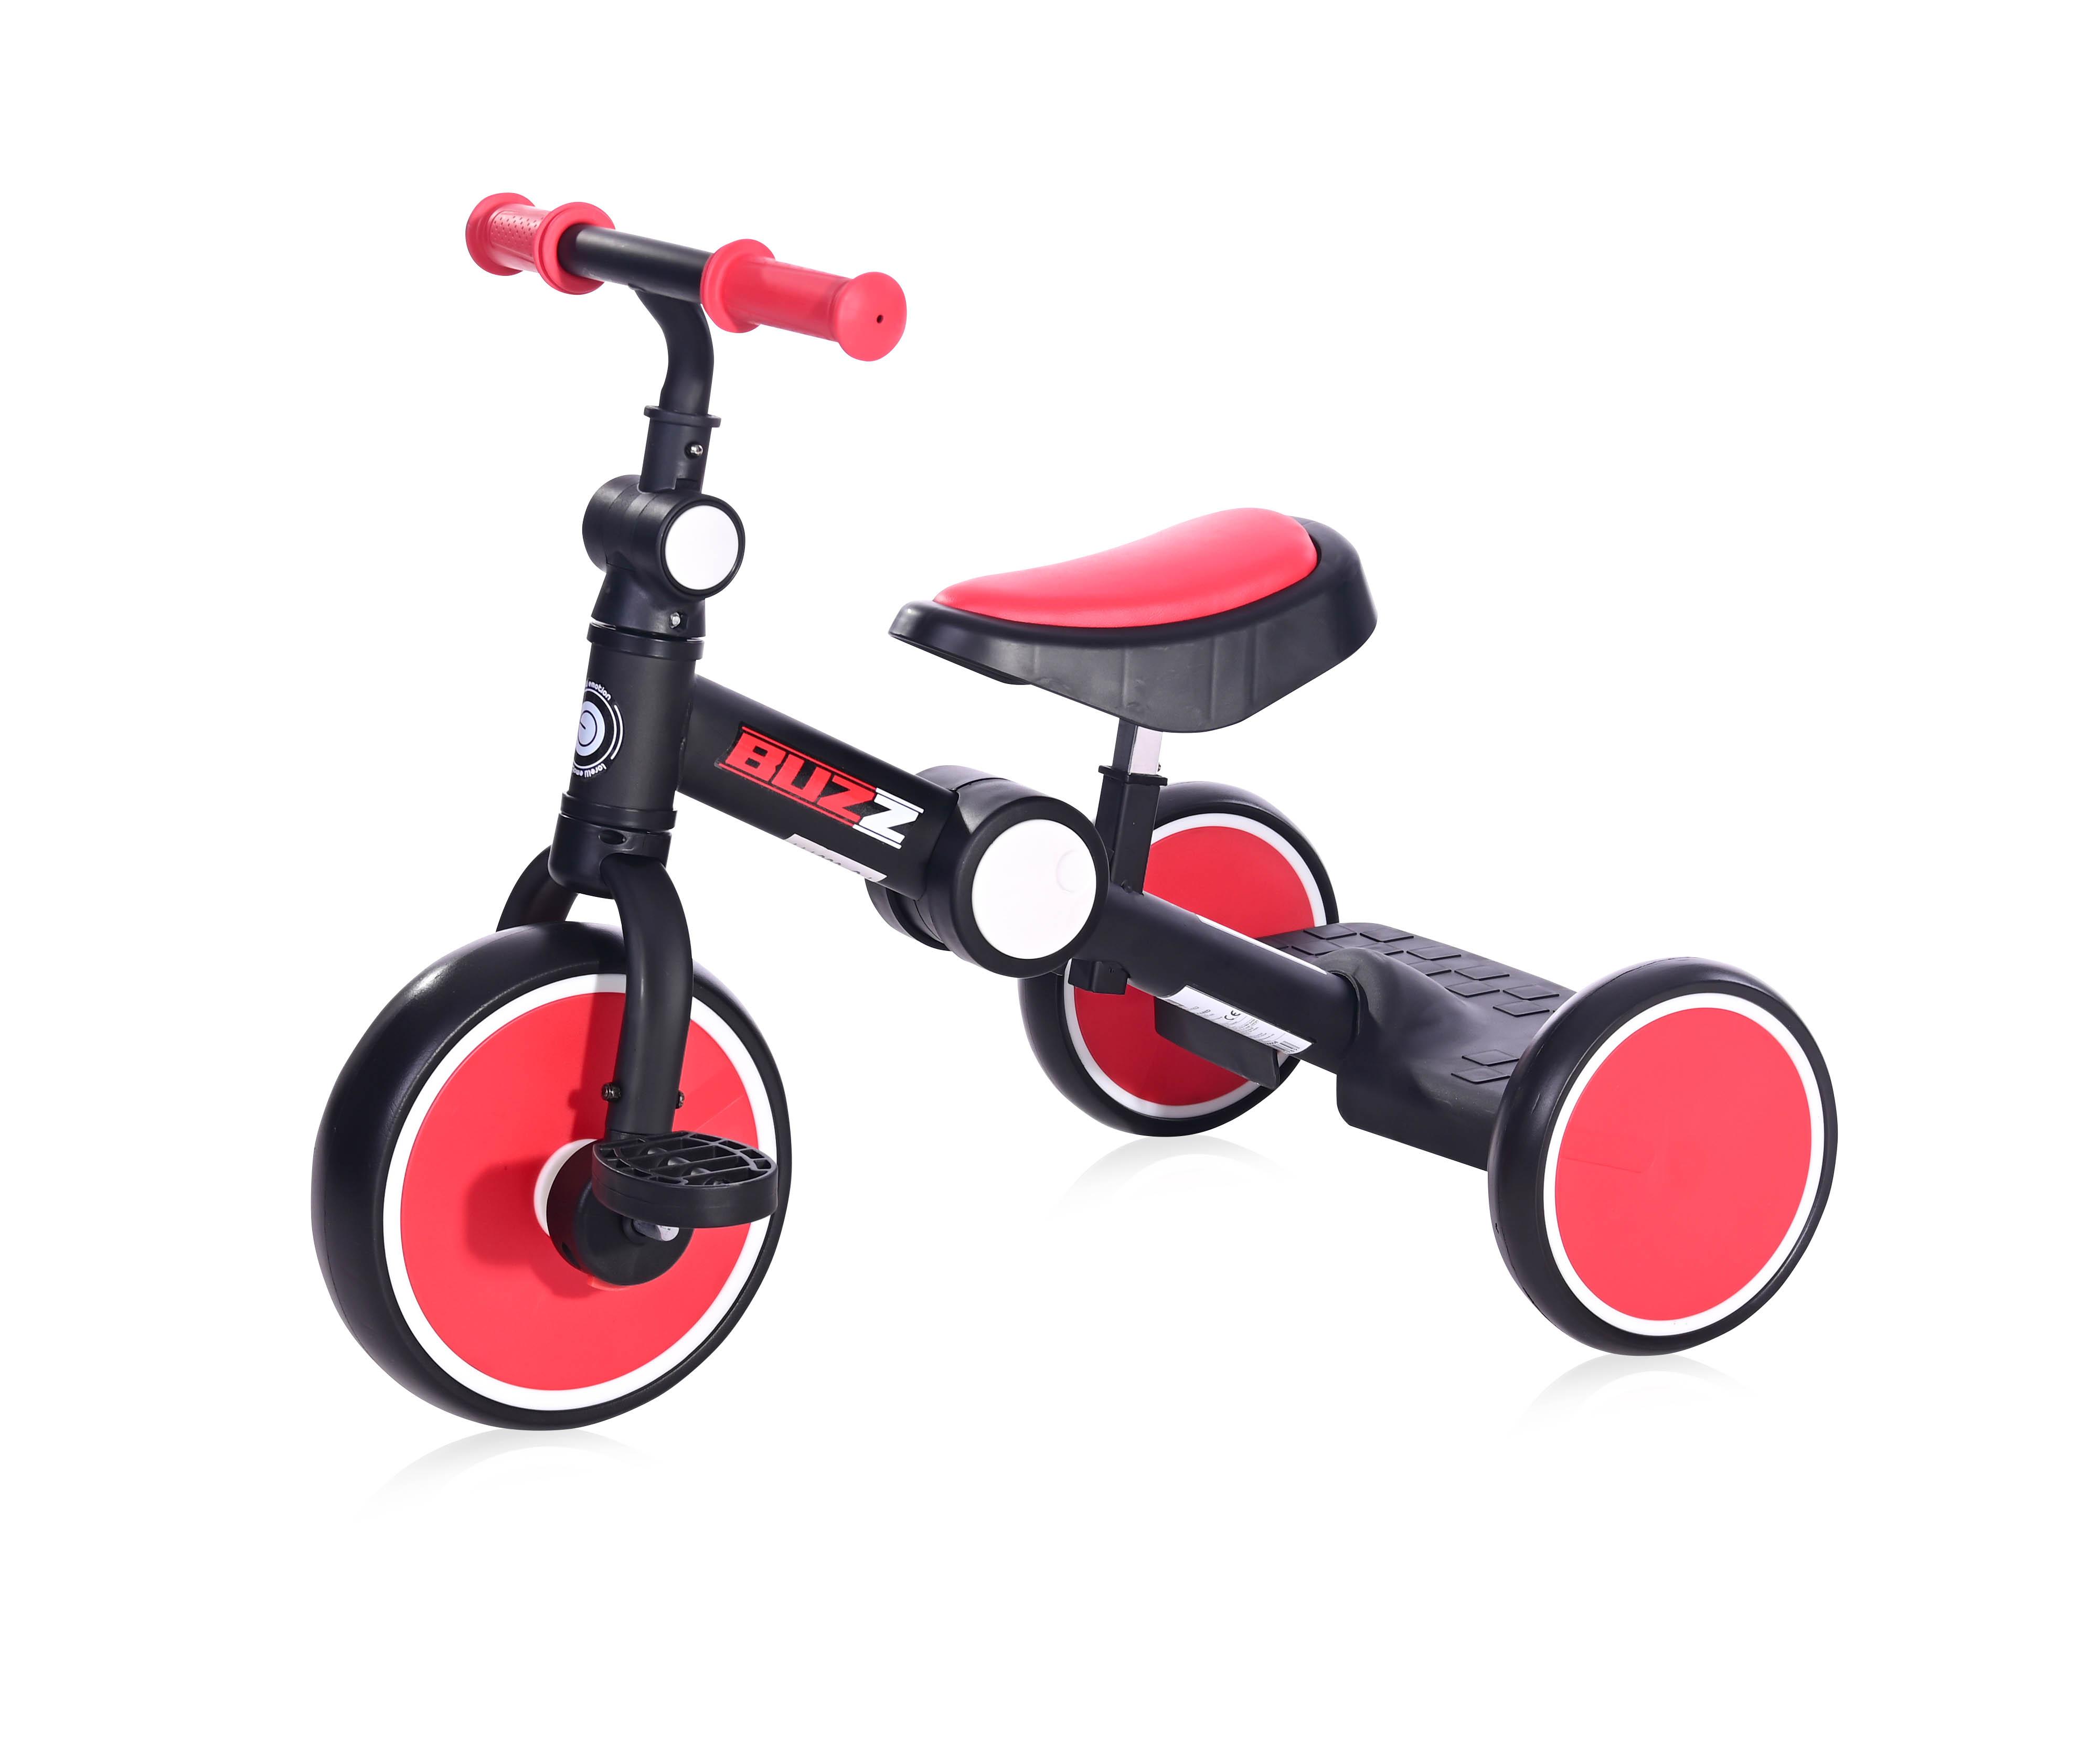 Triciclete - Tricicleta pentru copii, Buzz, complet pliabila, Black & Red, bebelorelli.ro